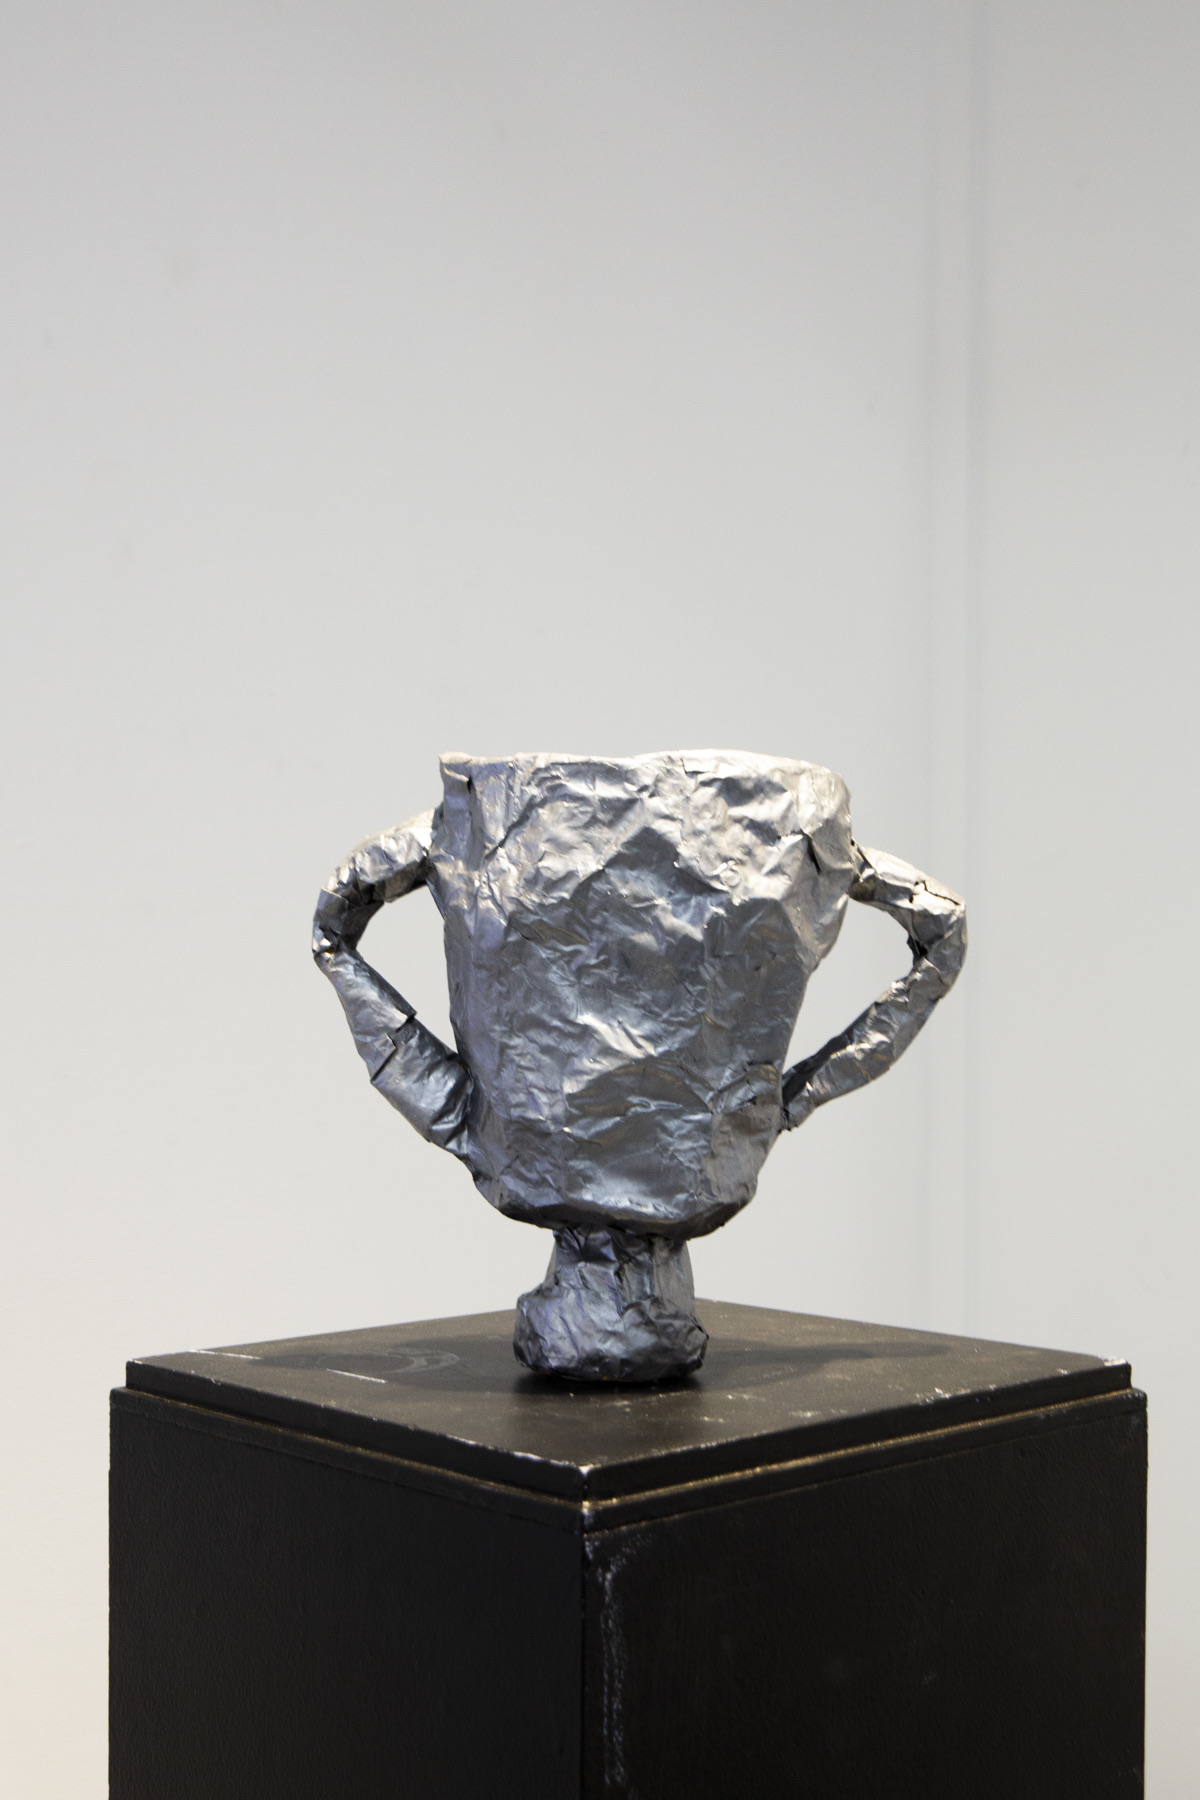 Paper-Mache Premiership Cup sculpture